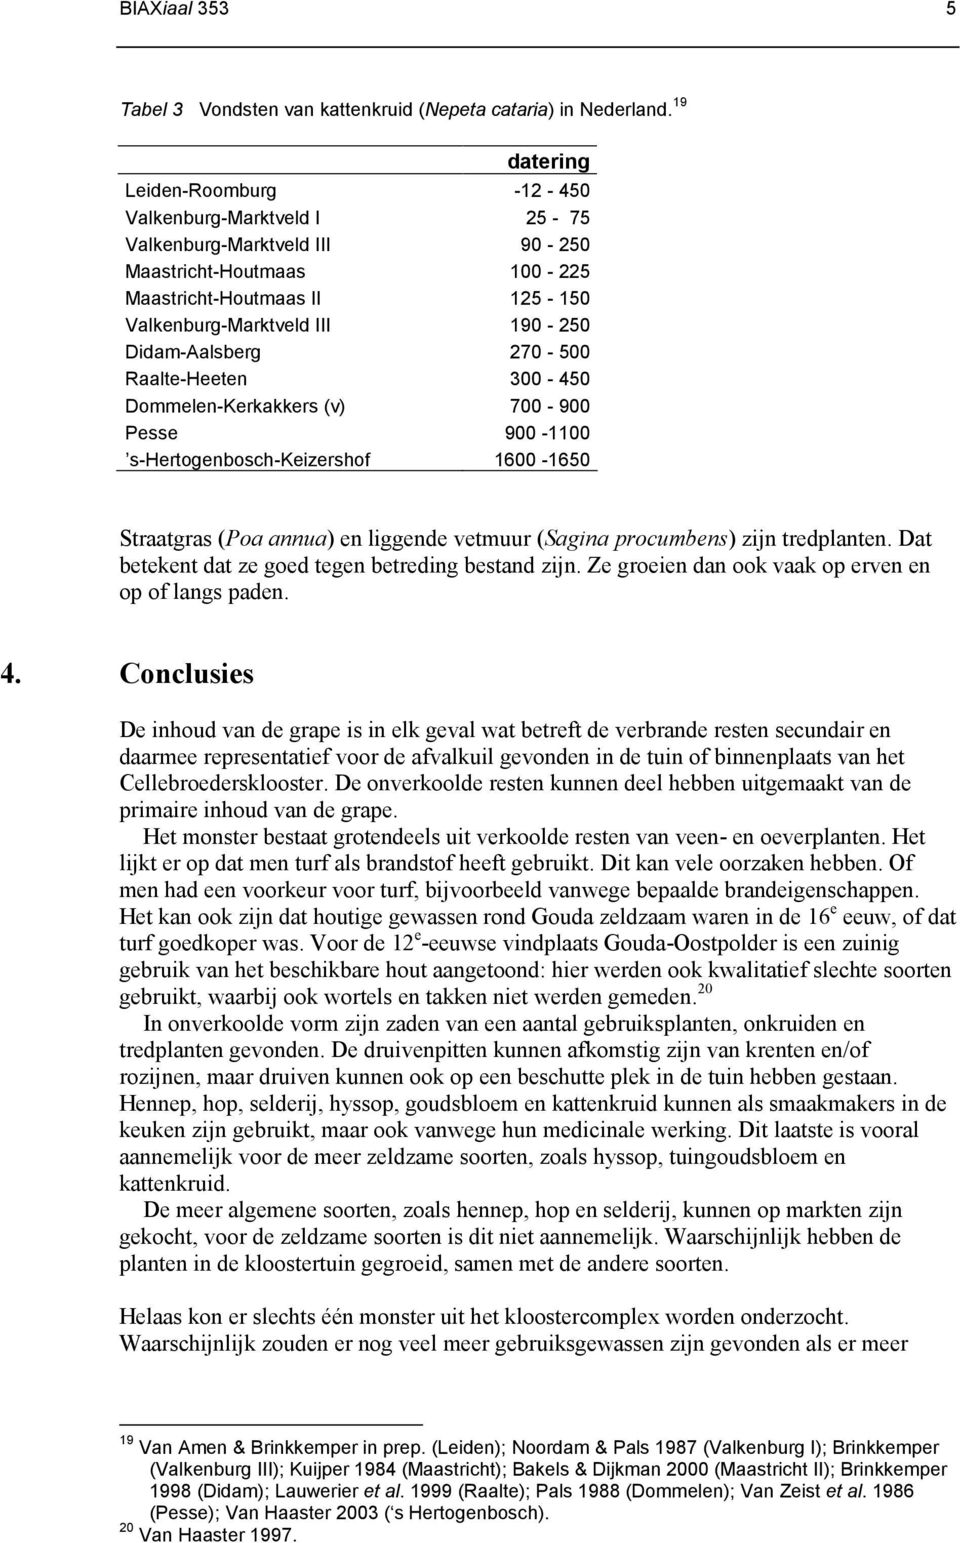 Didam-Aalsberg 270-500 Raalte-Heeten 300-450 Dommelen-Kerkakkers (v) 700-900 Pesse 900-1100 s-hertogenbosch-keizershof 1600-1650 Straatgras (Poa annua) en liggende vetmuur (Sagina procumbens) zijn